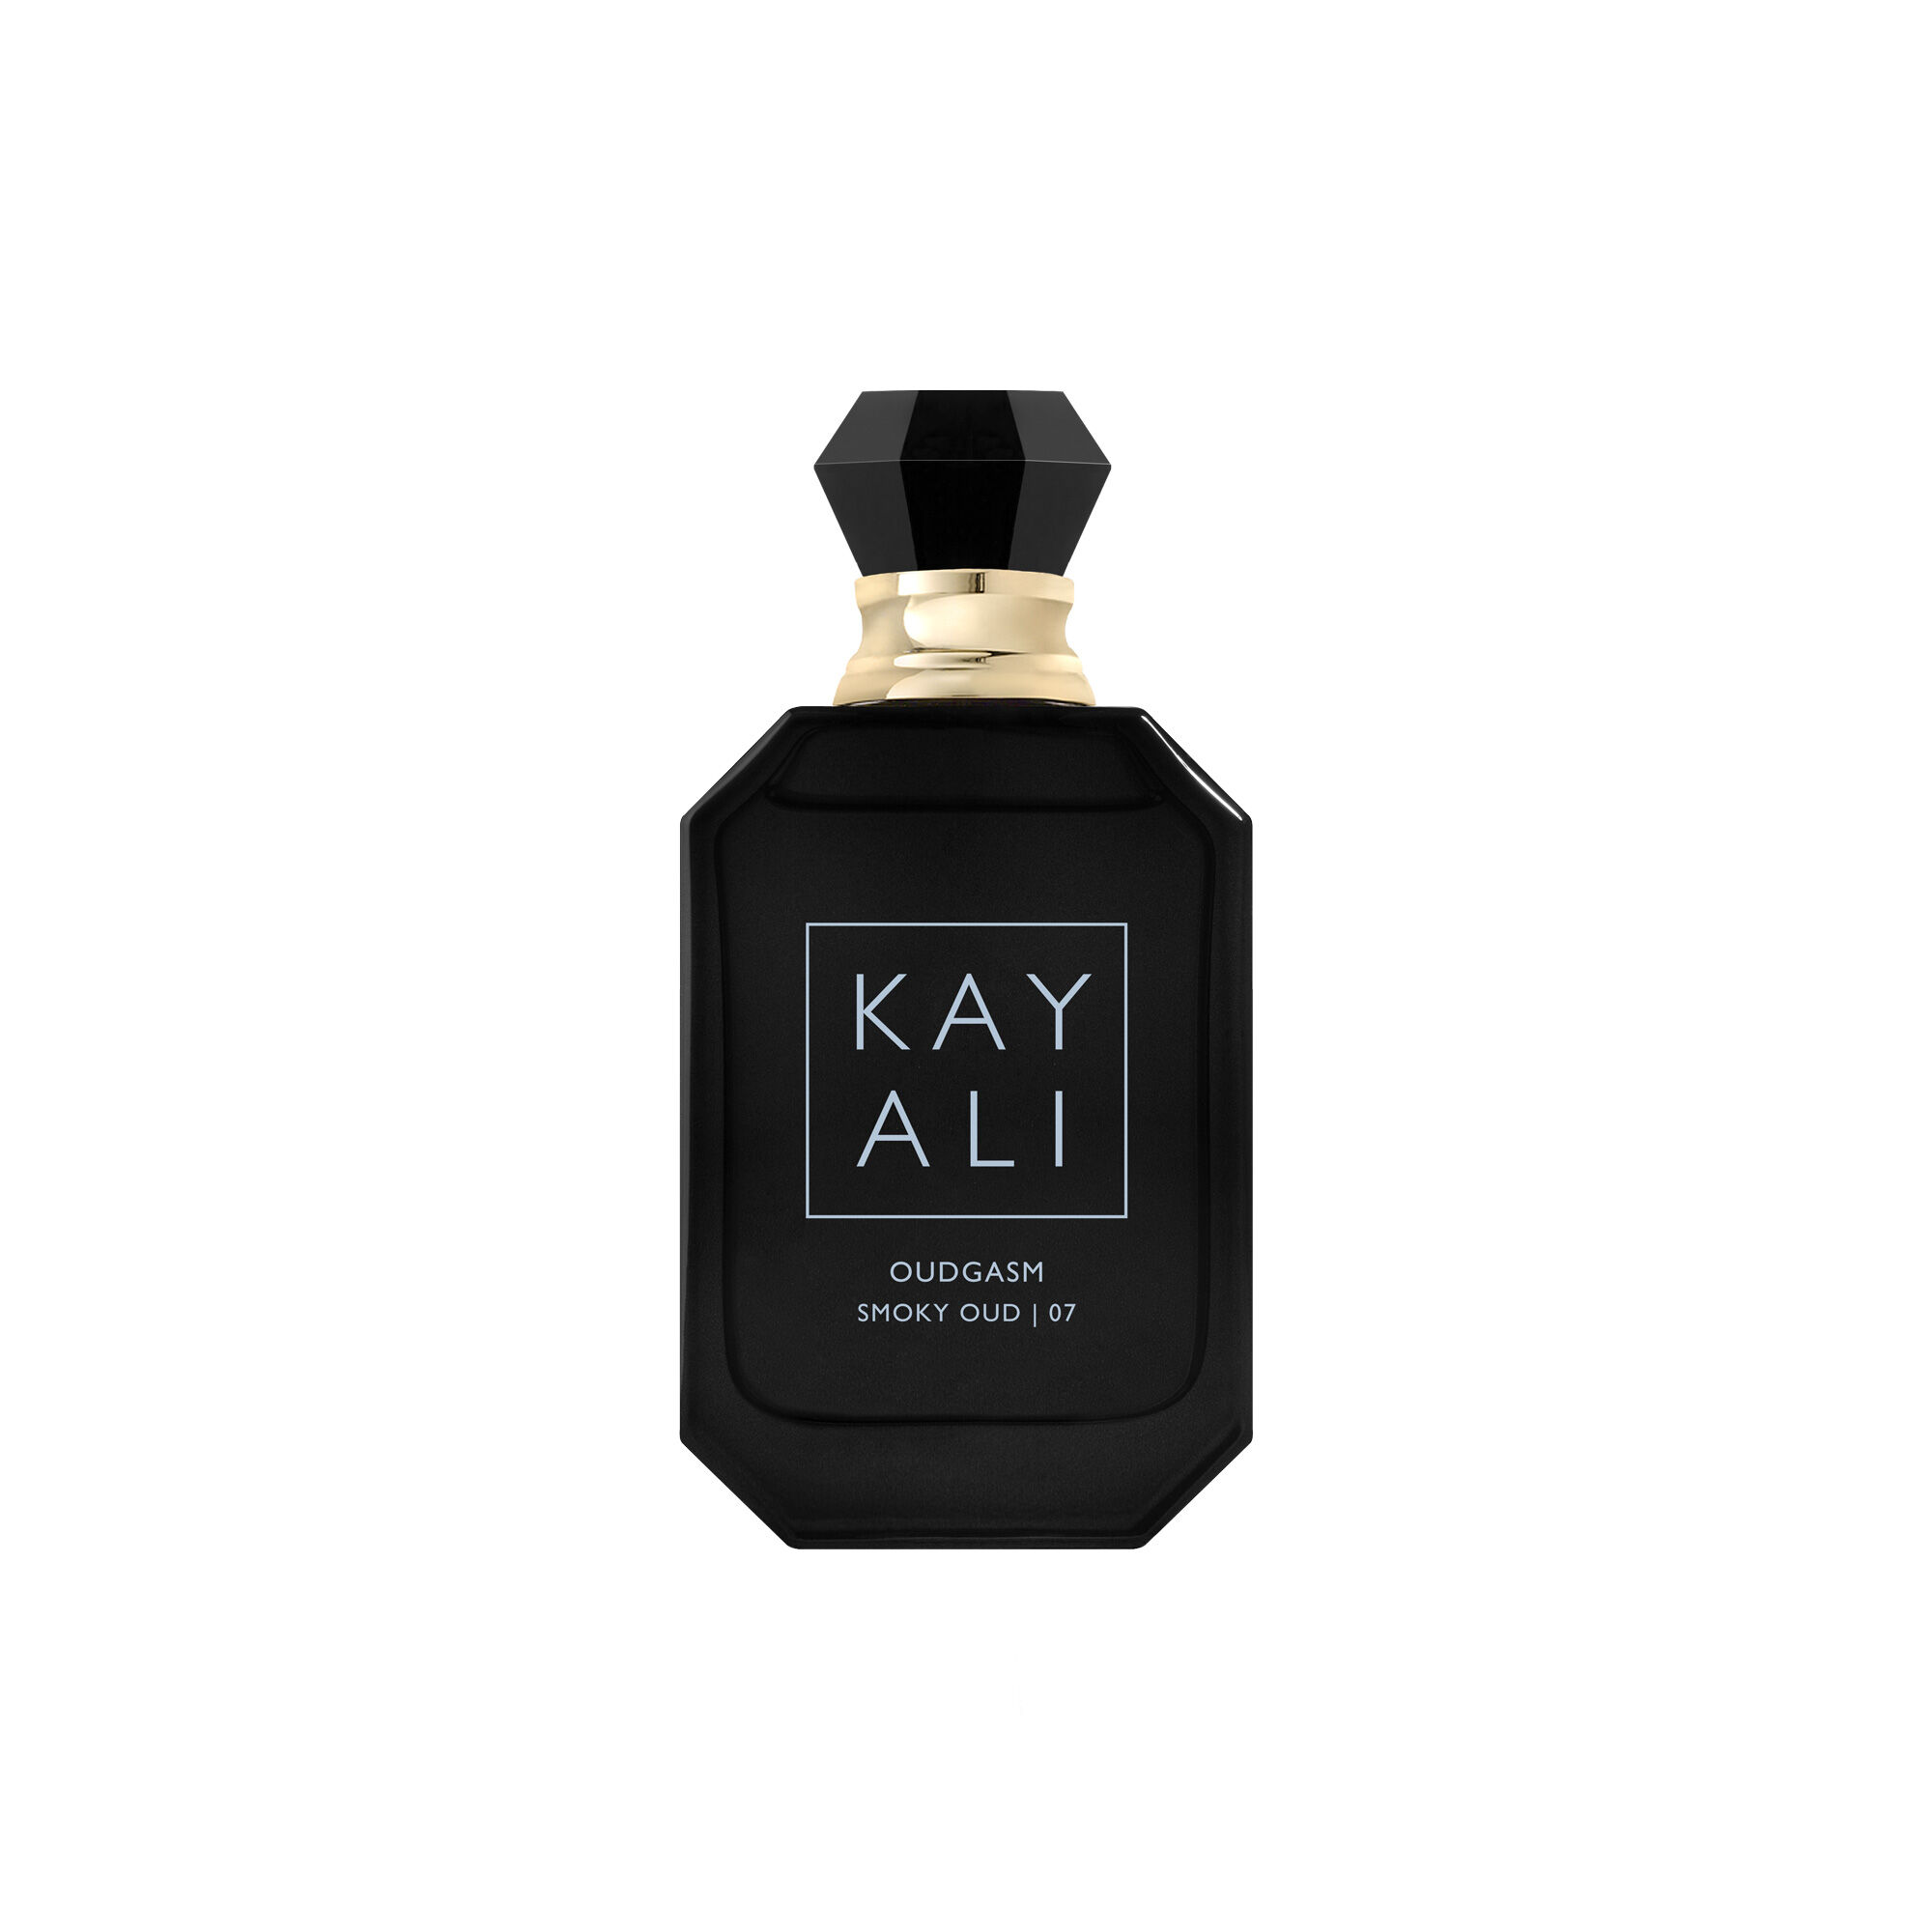 Shop Kayali Oudgasm Smoky Oud |07 Eau De Parfum Intense